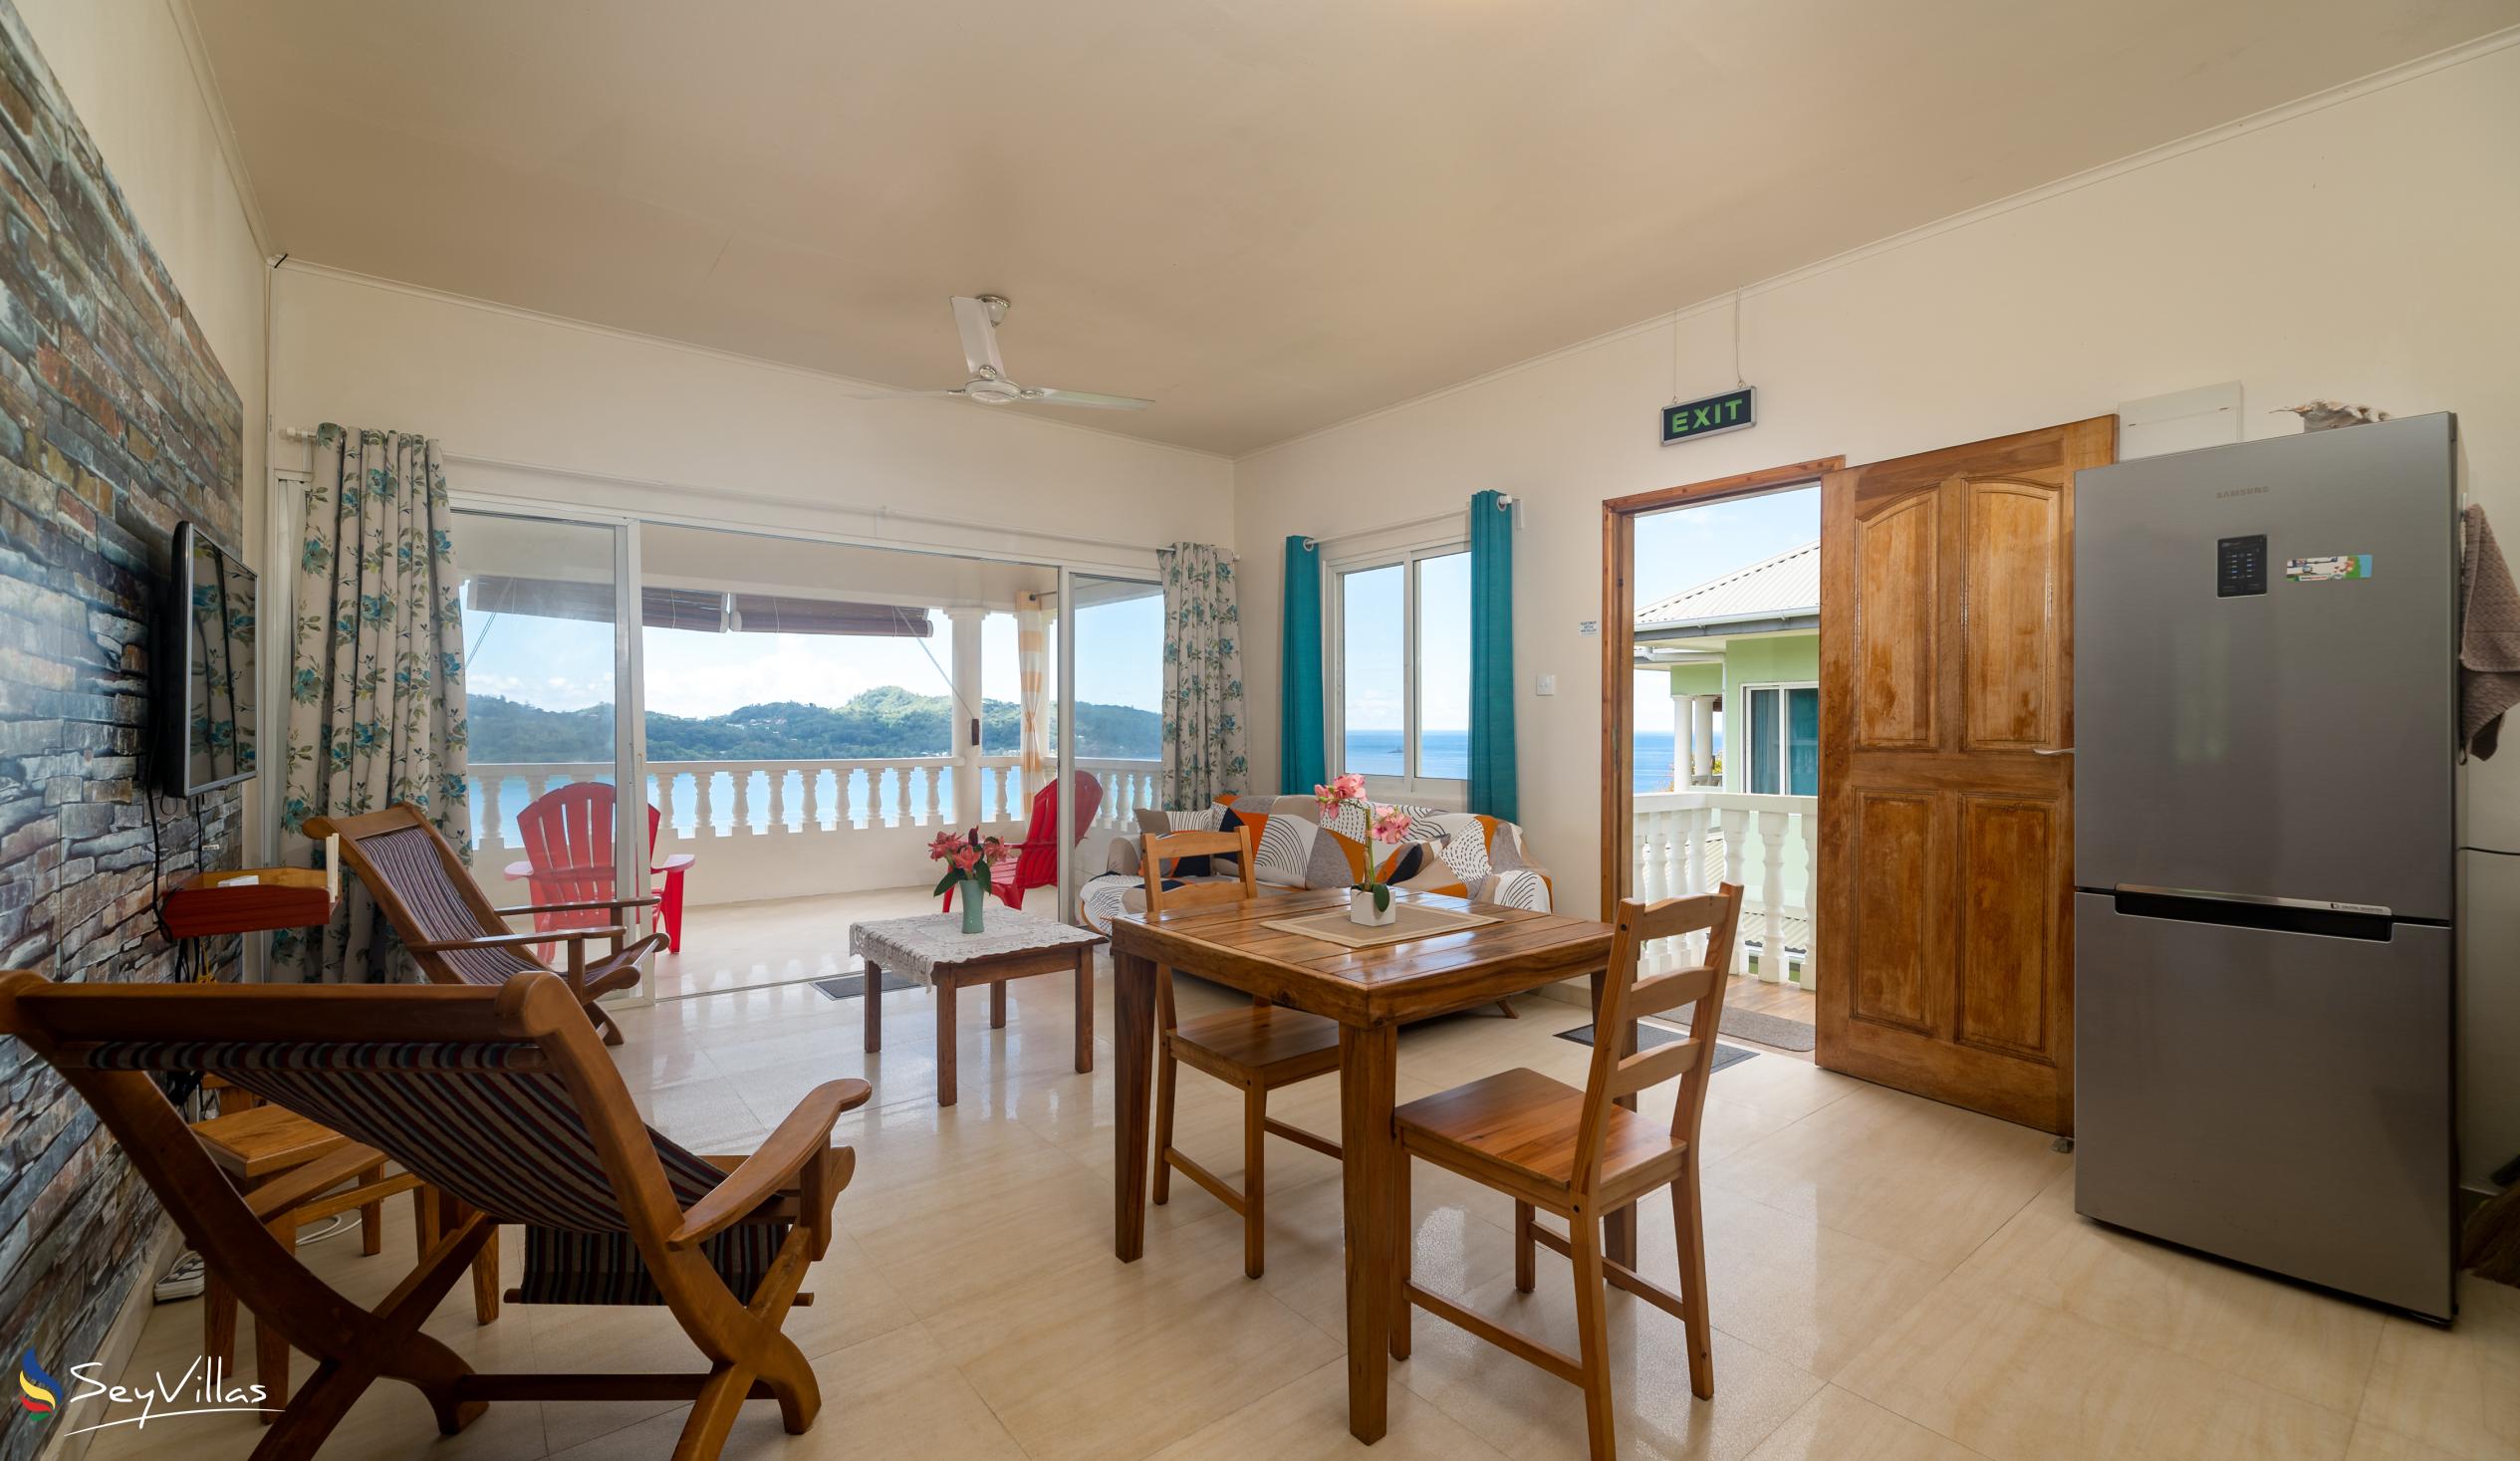 Foto 61: Top View Retreat - Appartement Standard vue sur la baie - Mahé (Seychelles)